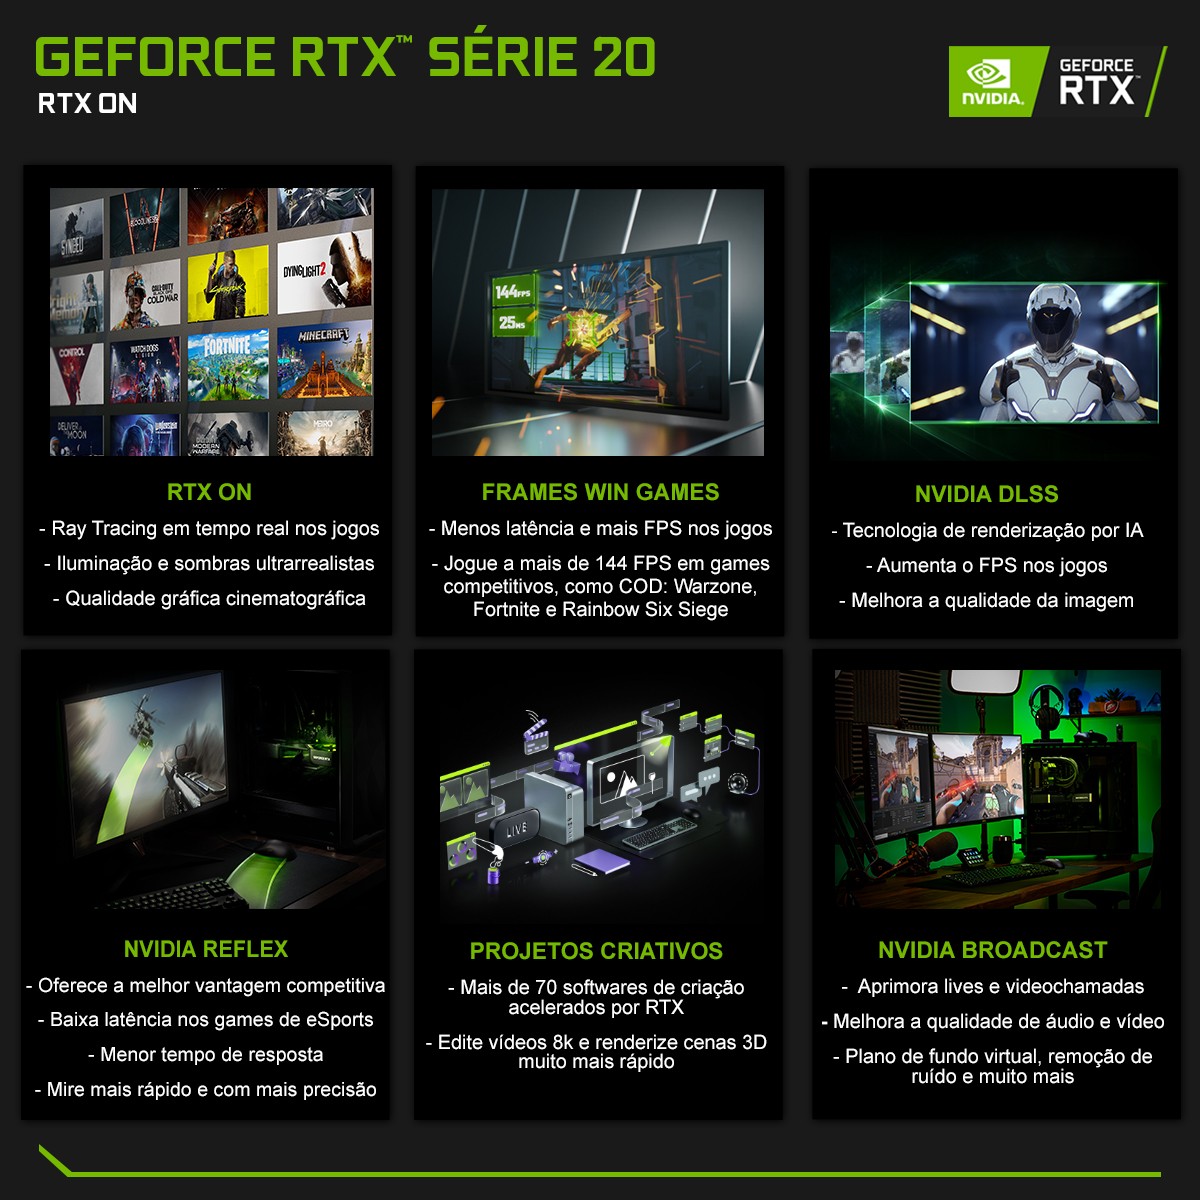 Placa de Vídeo Colorful iGame GeForce RTX 2070 Super Advanced OC-V, 8GB GDDR6, 256Bit